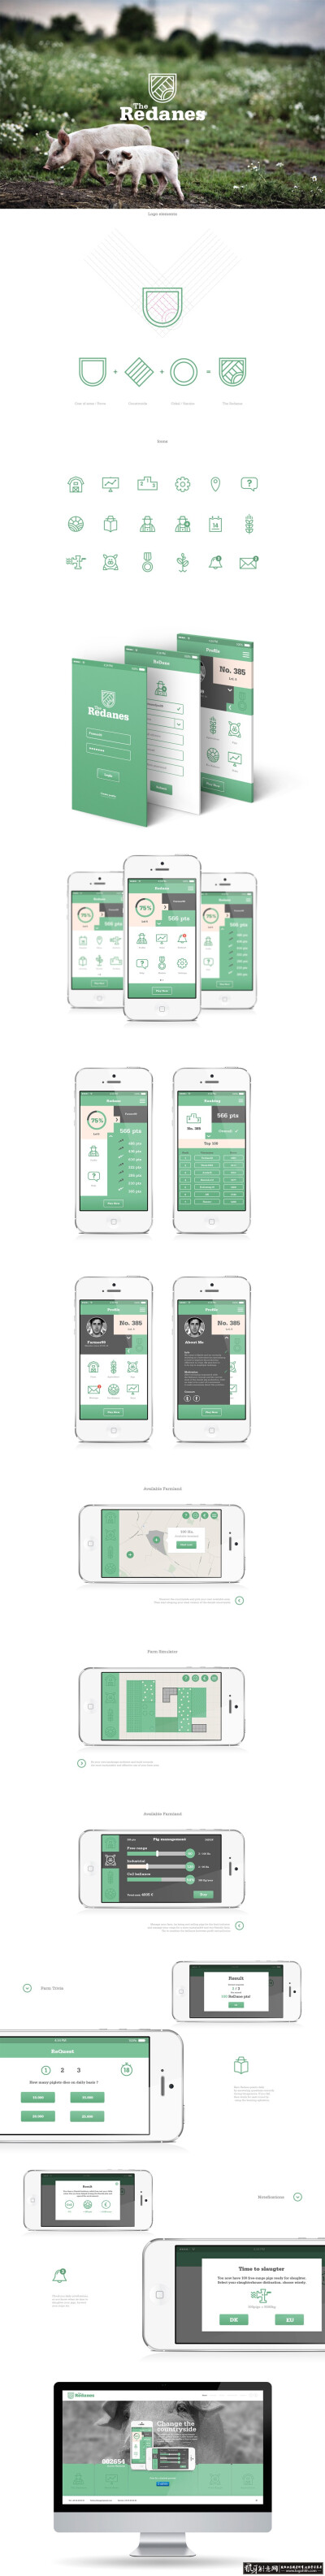 ui/app/酷站 创意农场手机app设计 创意手机界面设计 手机交互设计